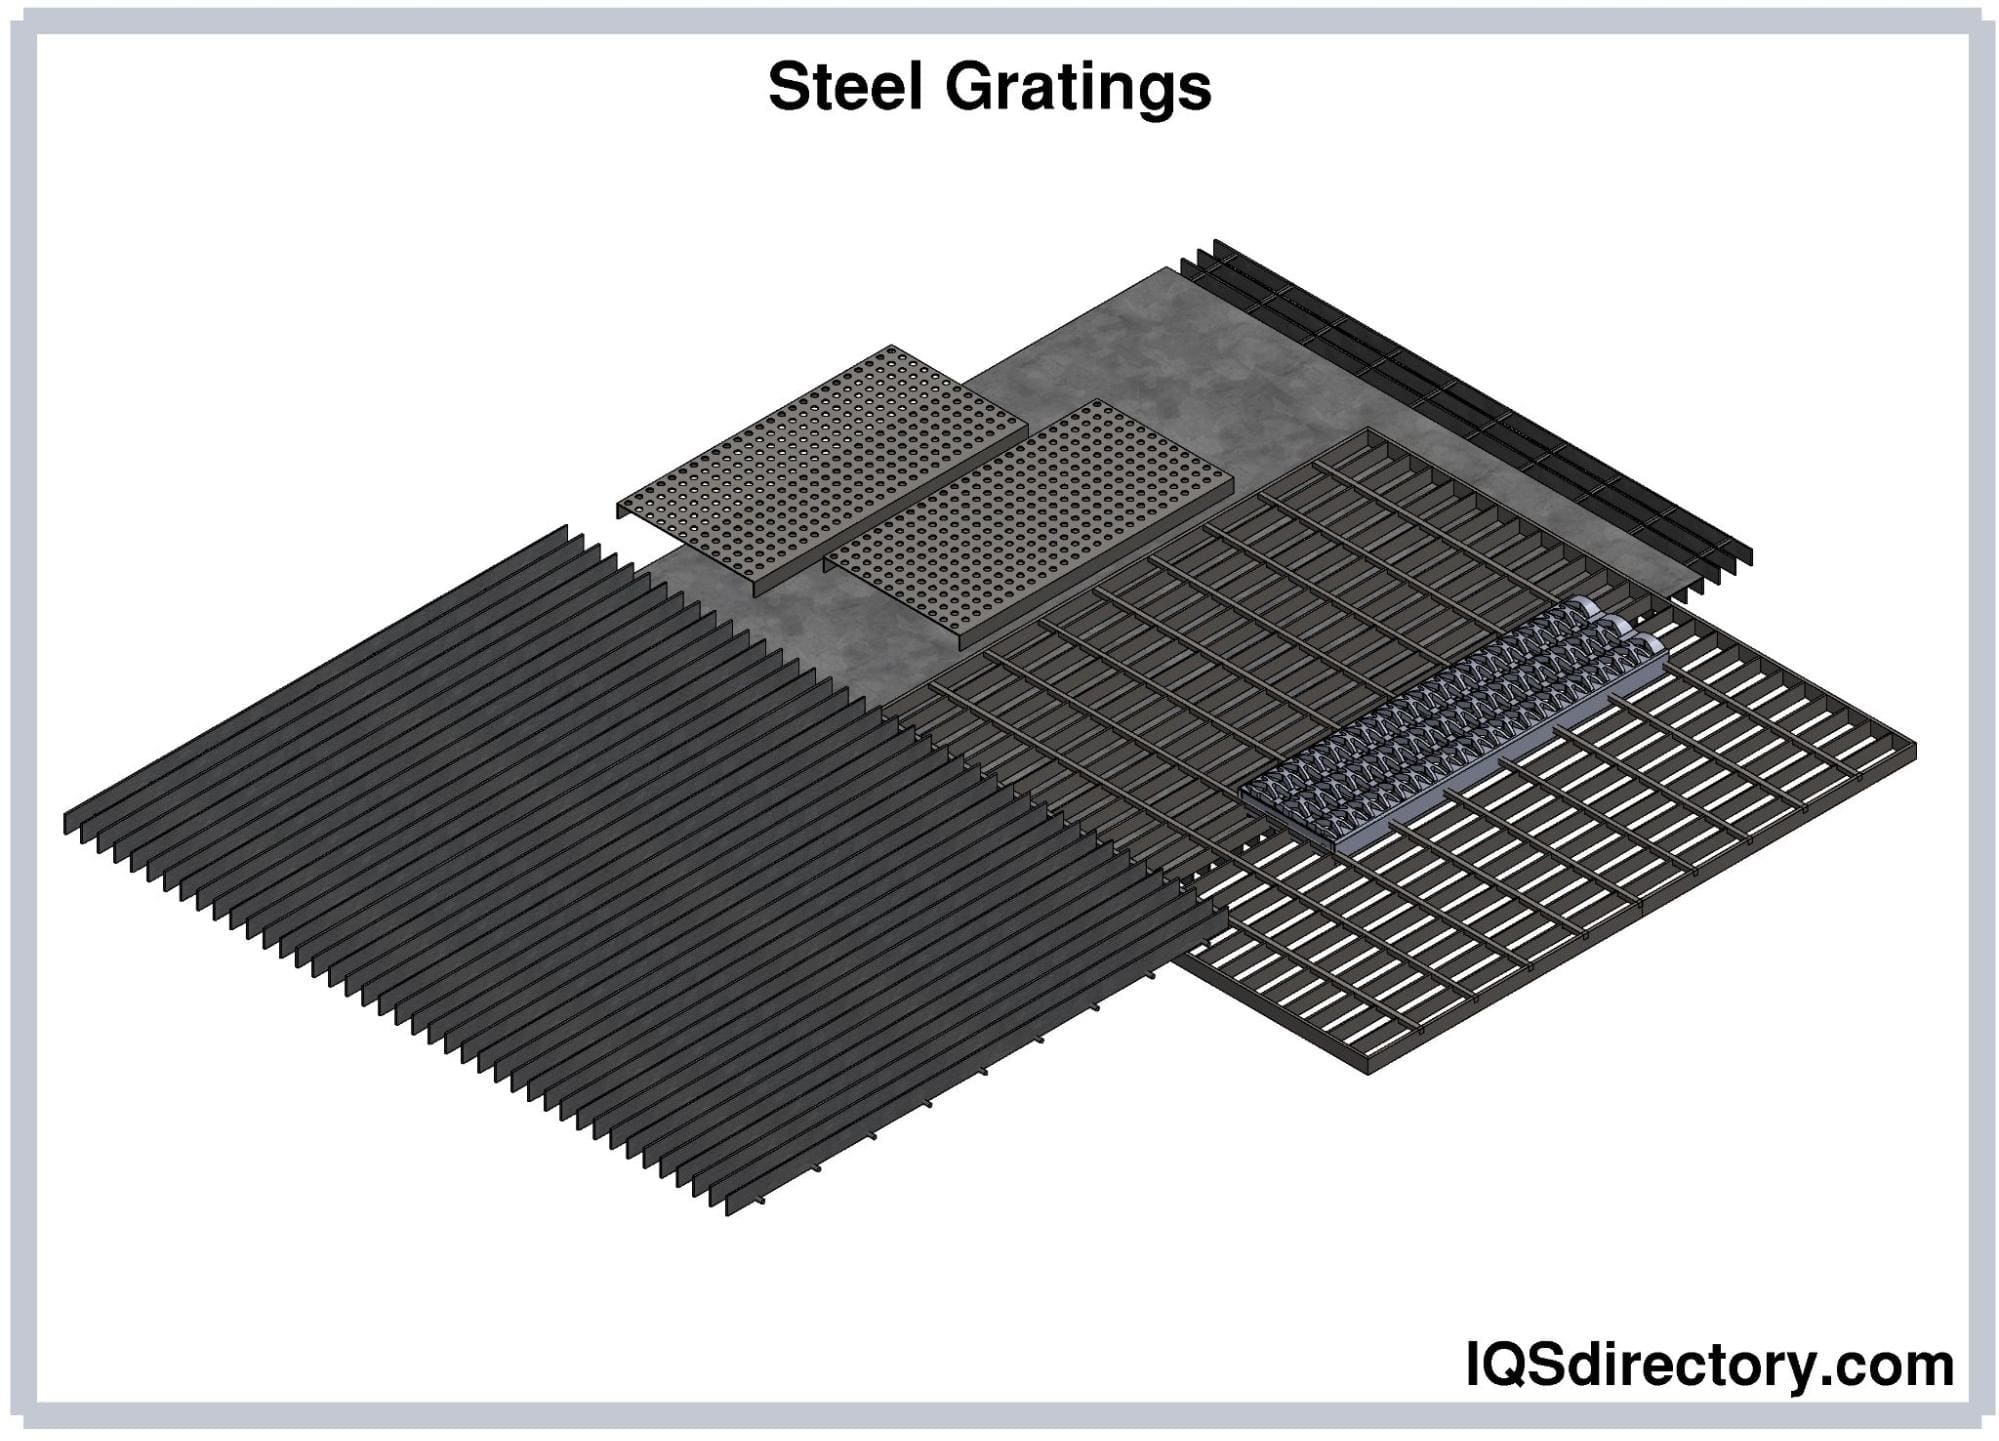 Steel Gratings